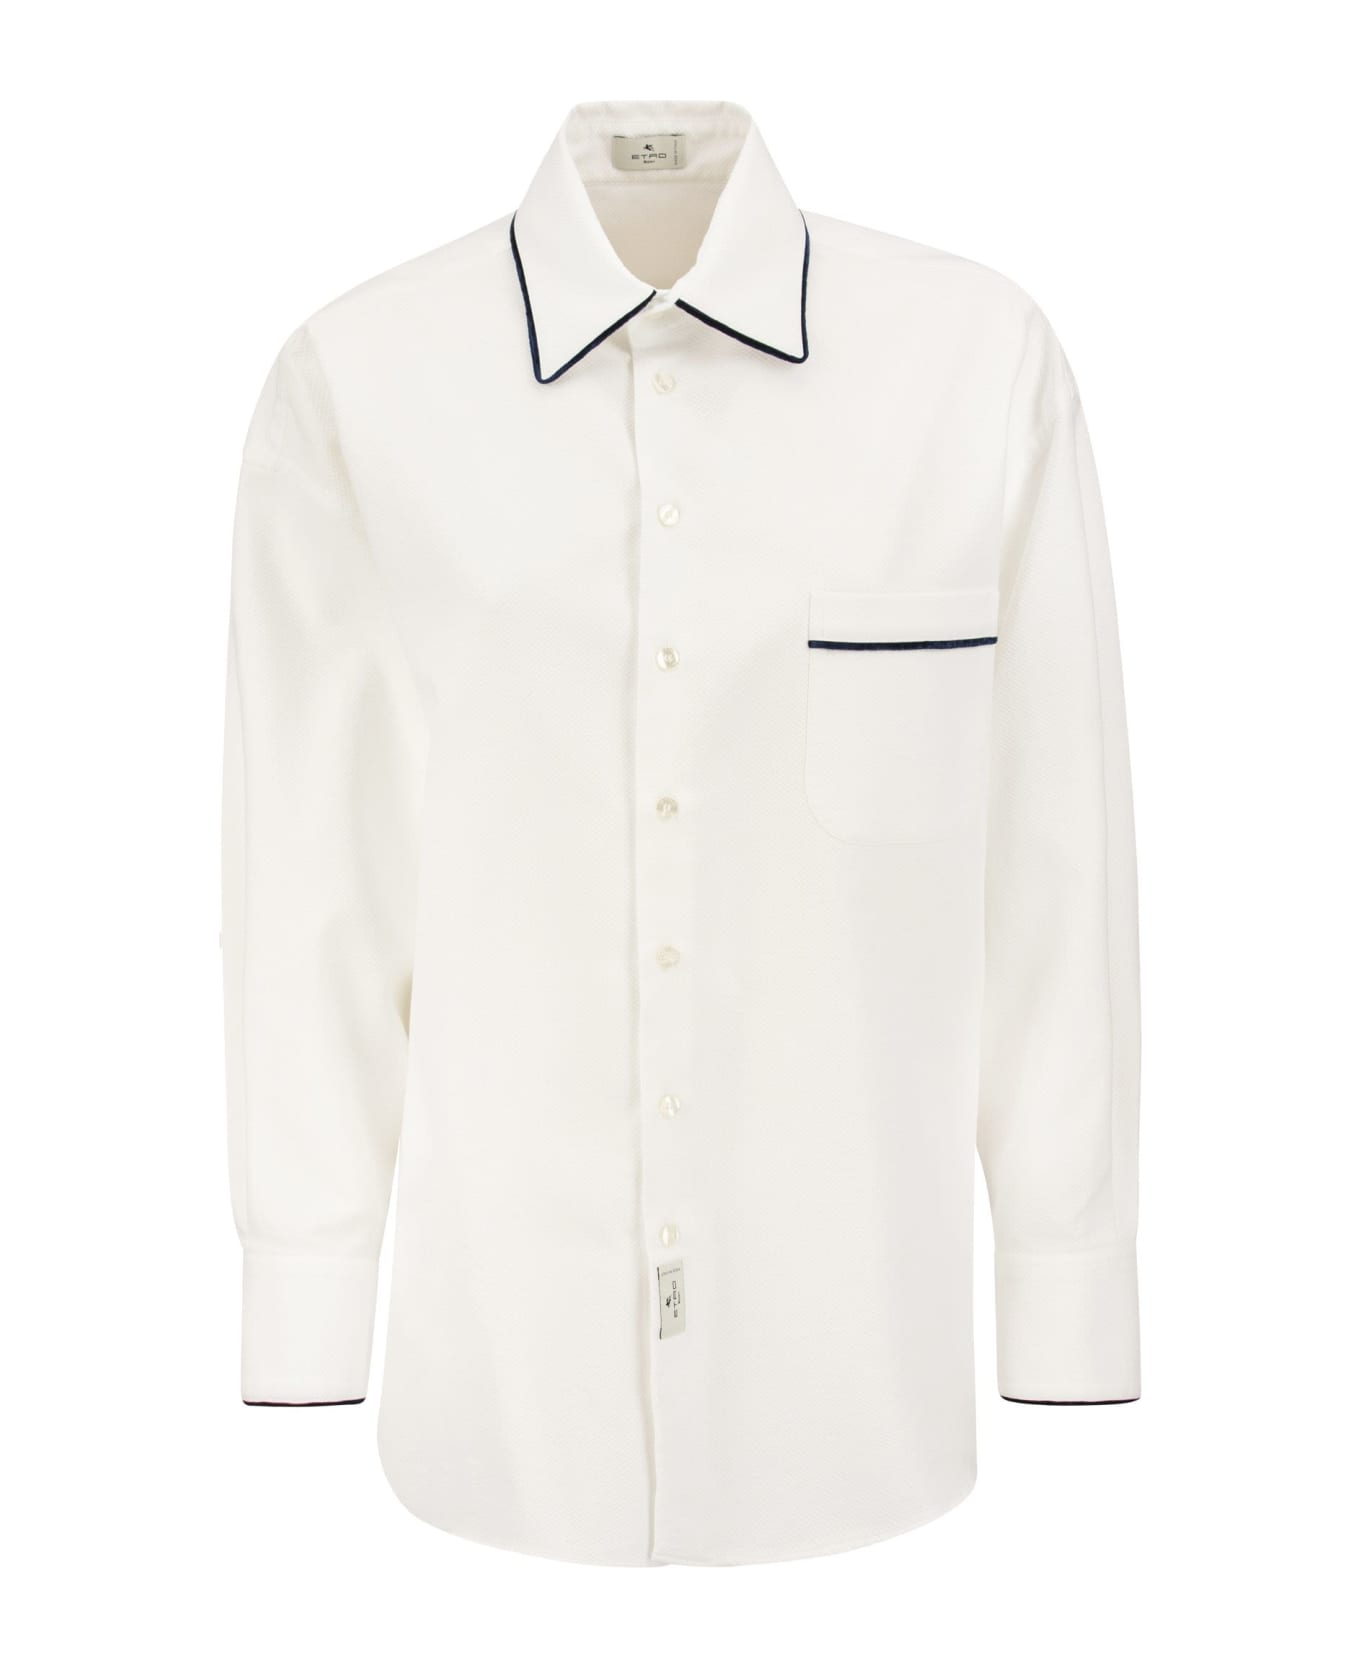 Etro Cotton Shirt - White